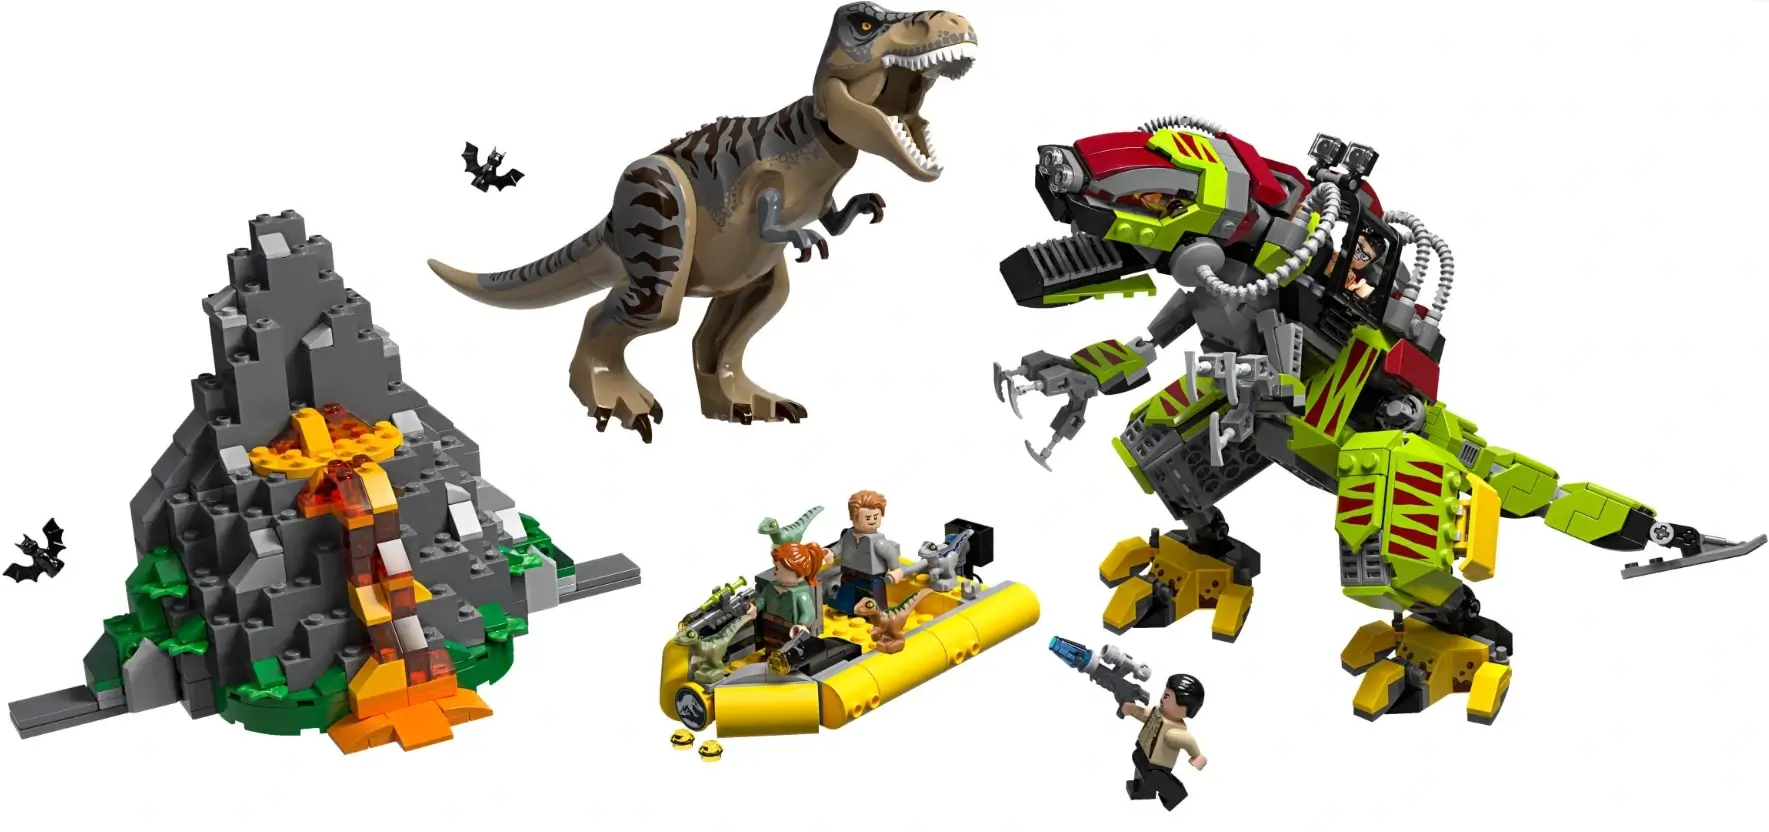 Dinozaur mechaniczny walczy z Tyranozaurusem - seria LEGO® Jurassic World™